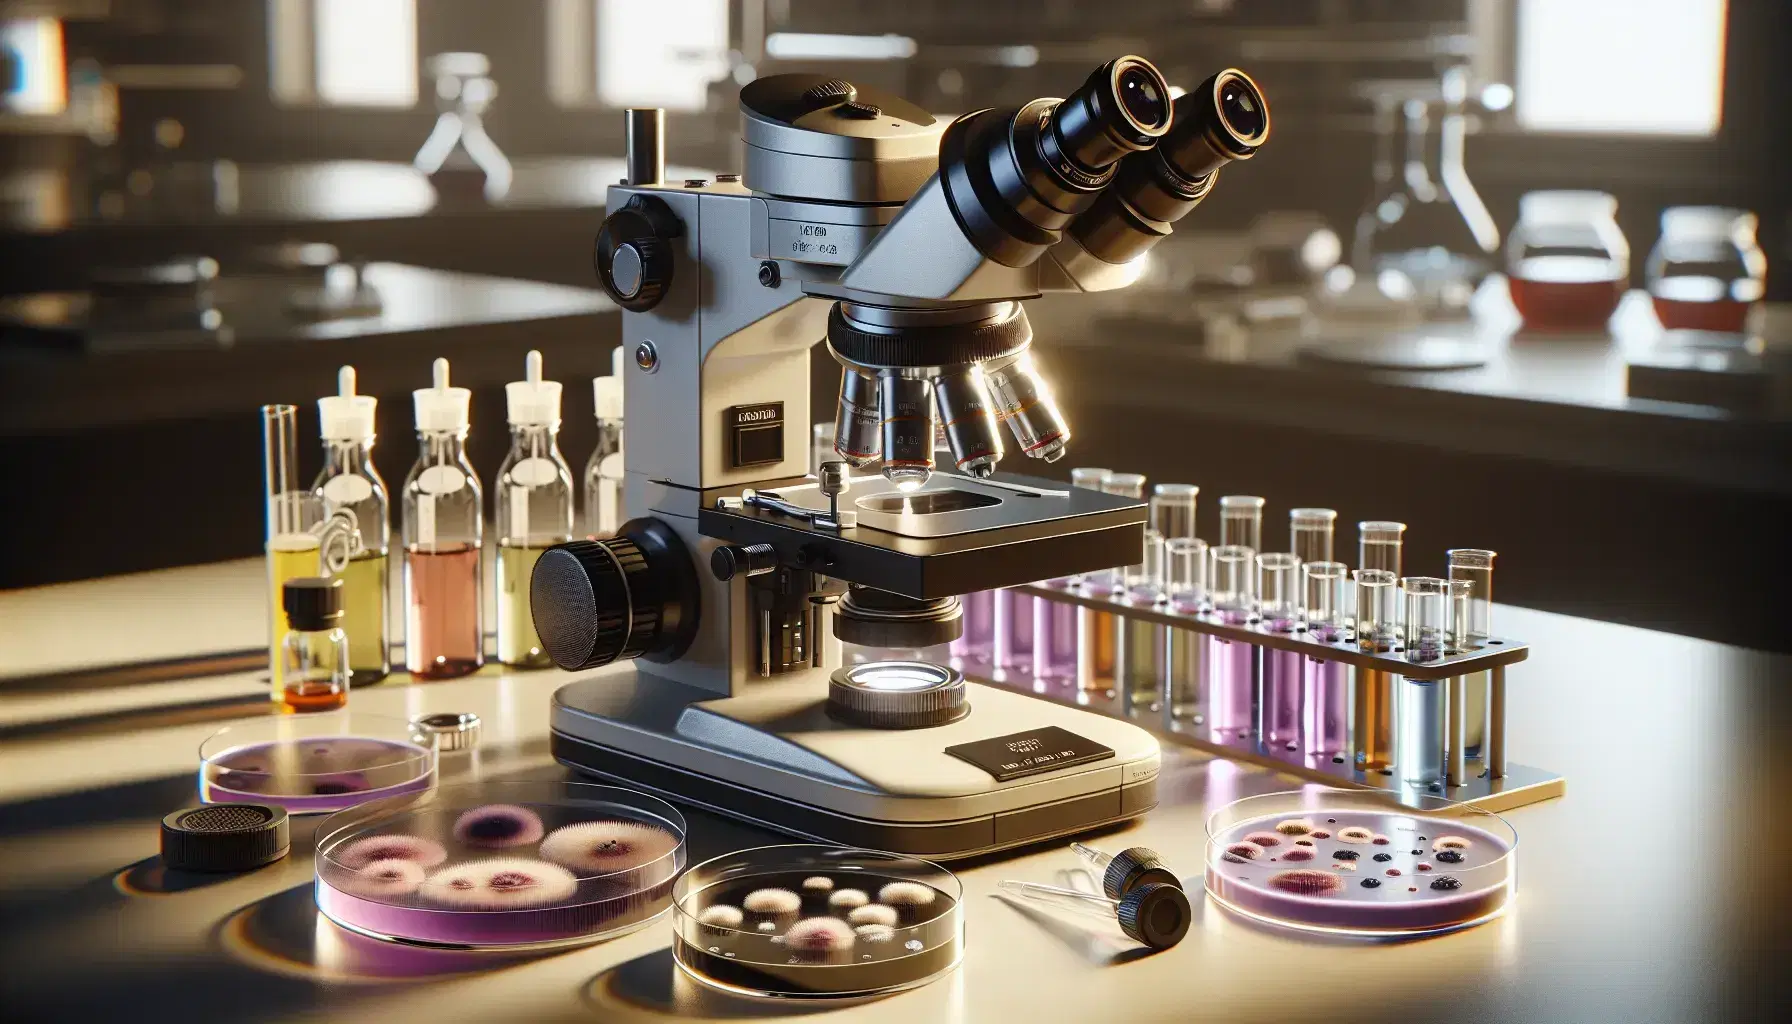 Microscopio moderno en laboratorio con plato de Petri y muestras bacterianas teñidas en violeta y rosa, junto a portaobjetos y frascos de reactivos.